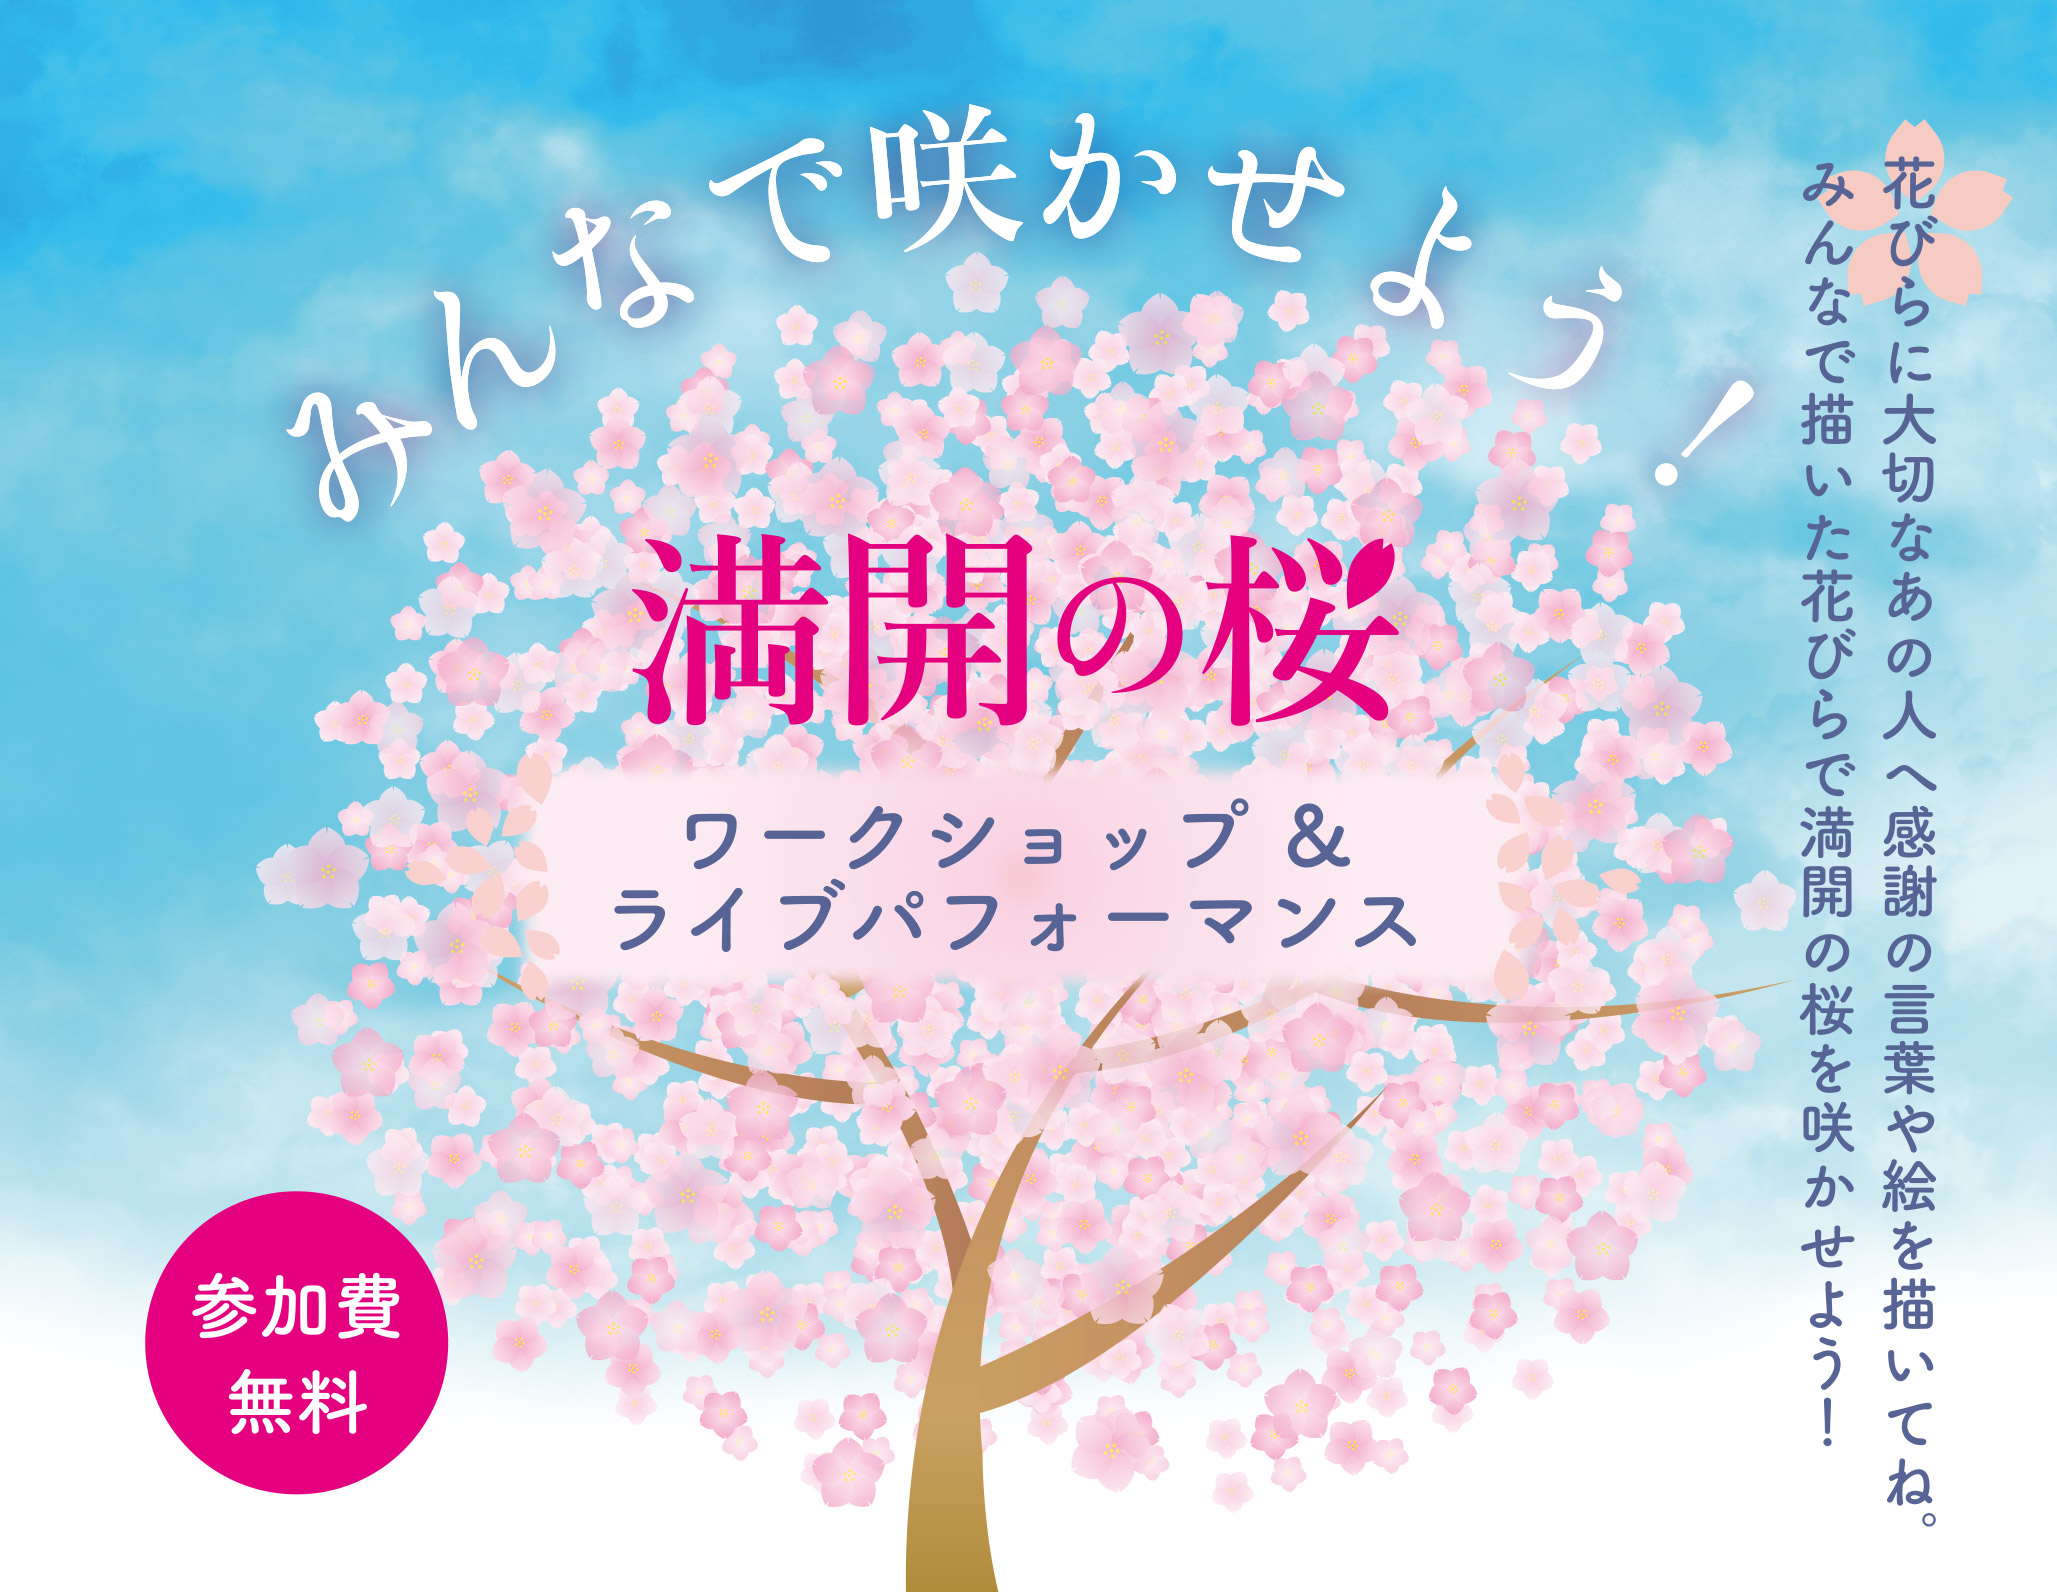 みんなで咲かせよう！満開の桜 ワークショップ＆ライブパフォーマンス